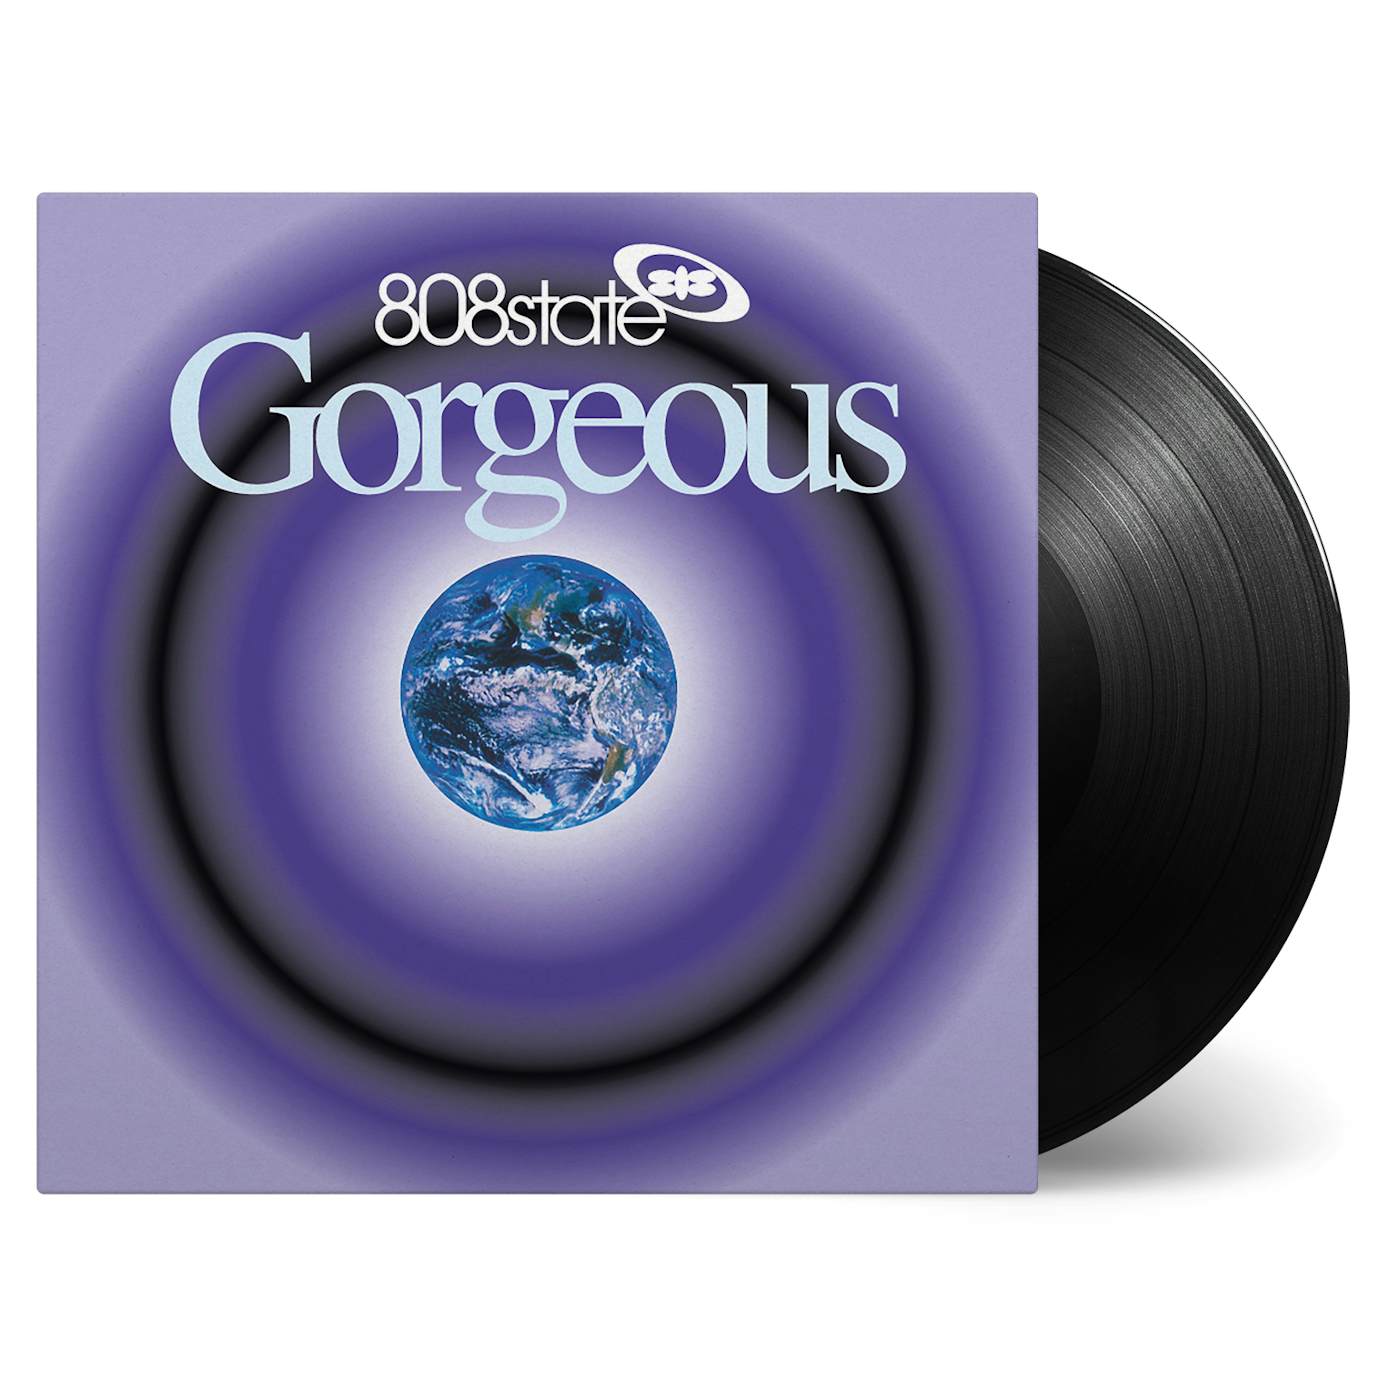 808 State Gorgeous Vinyl Record